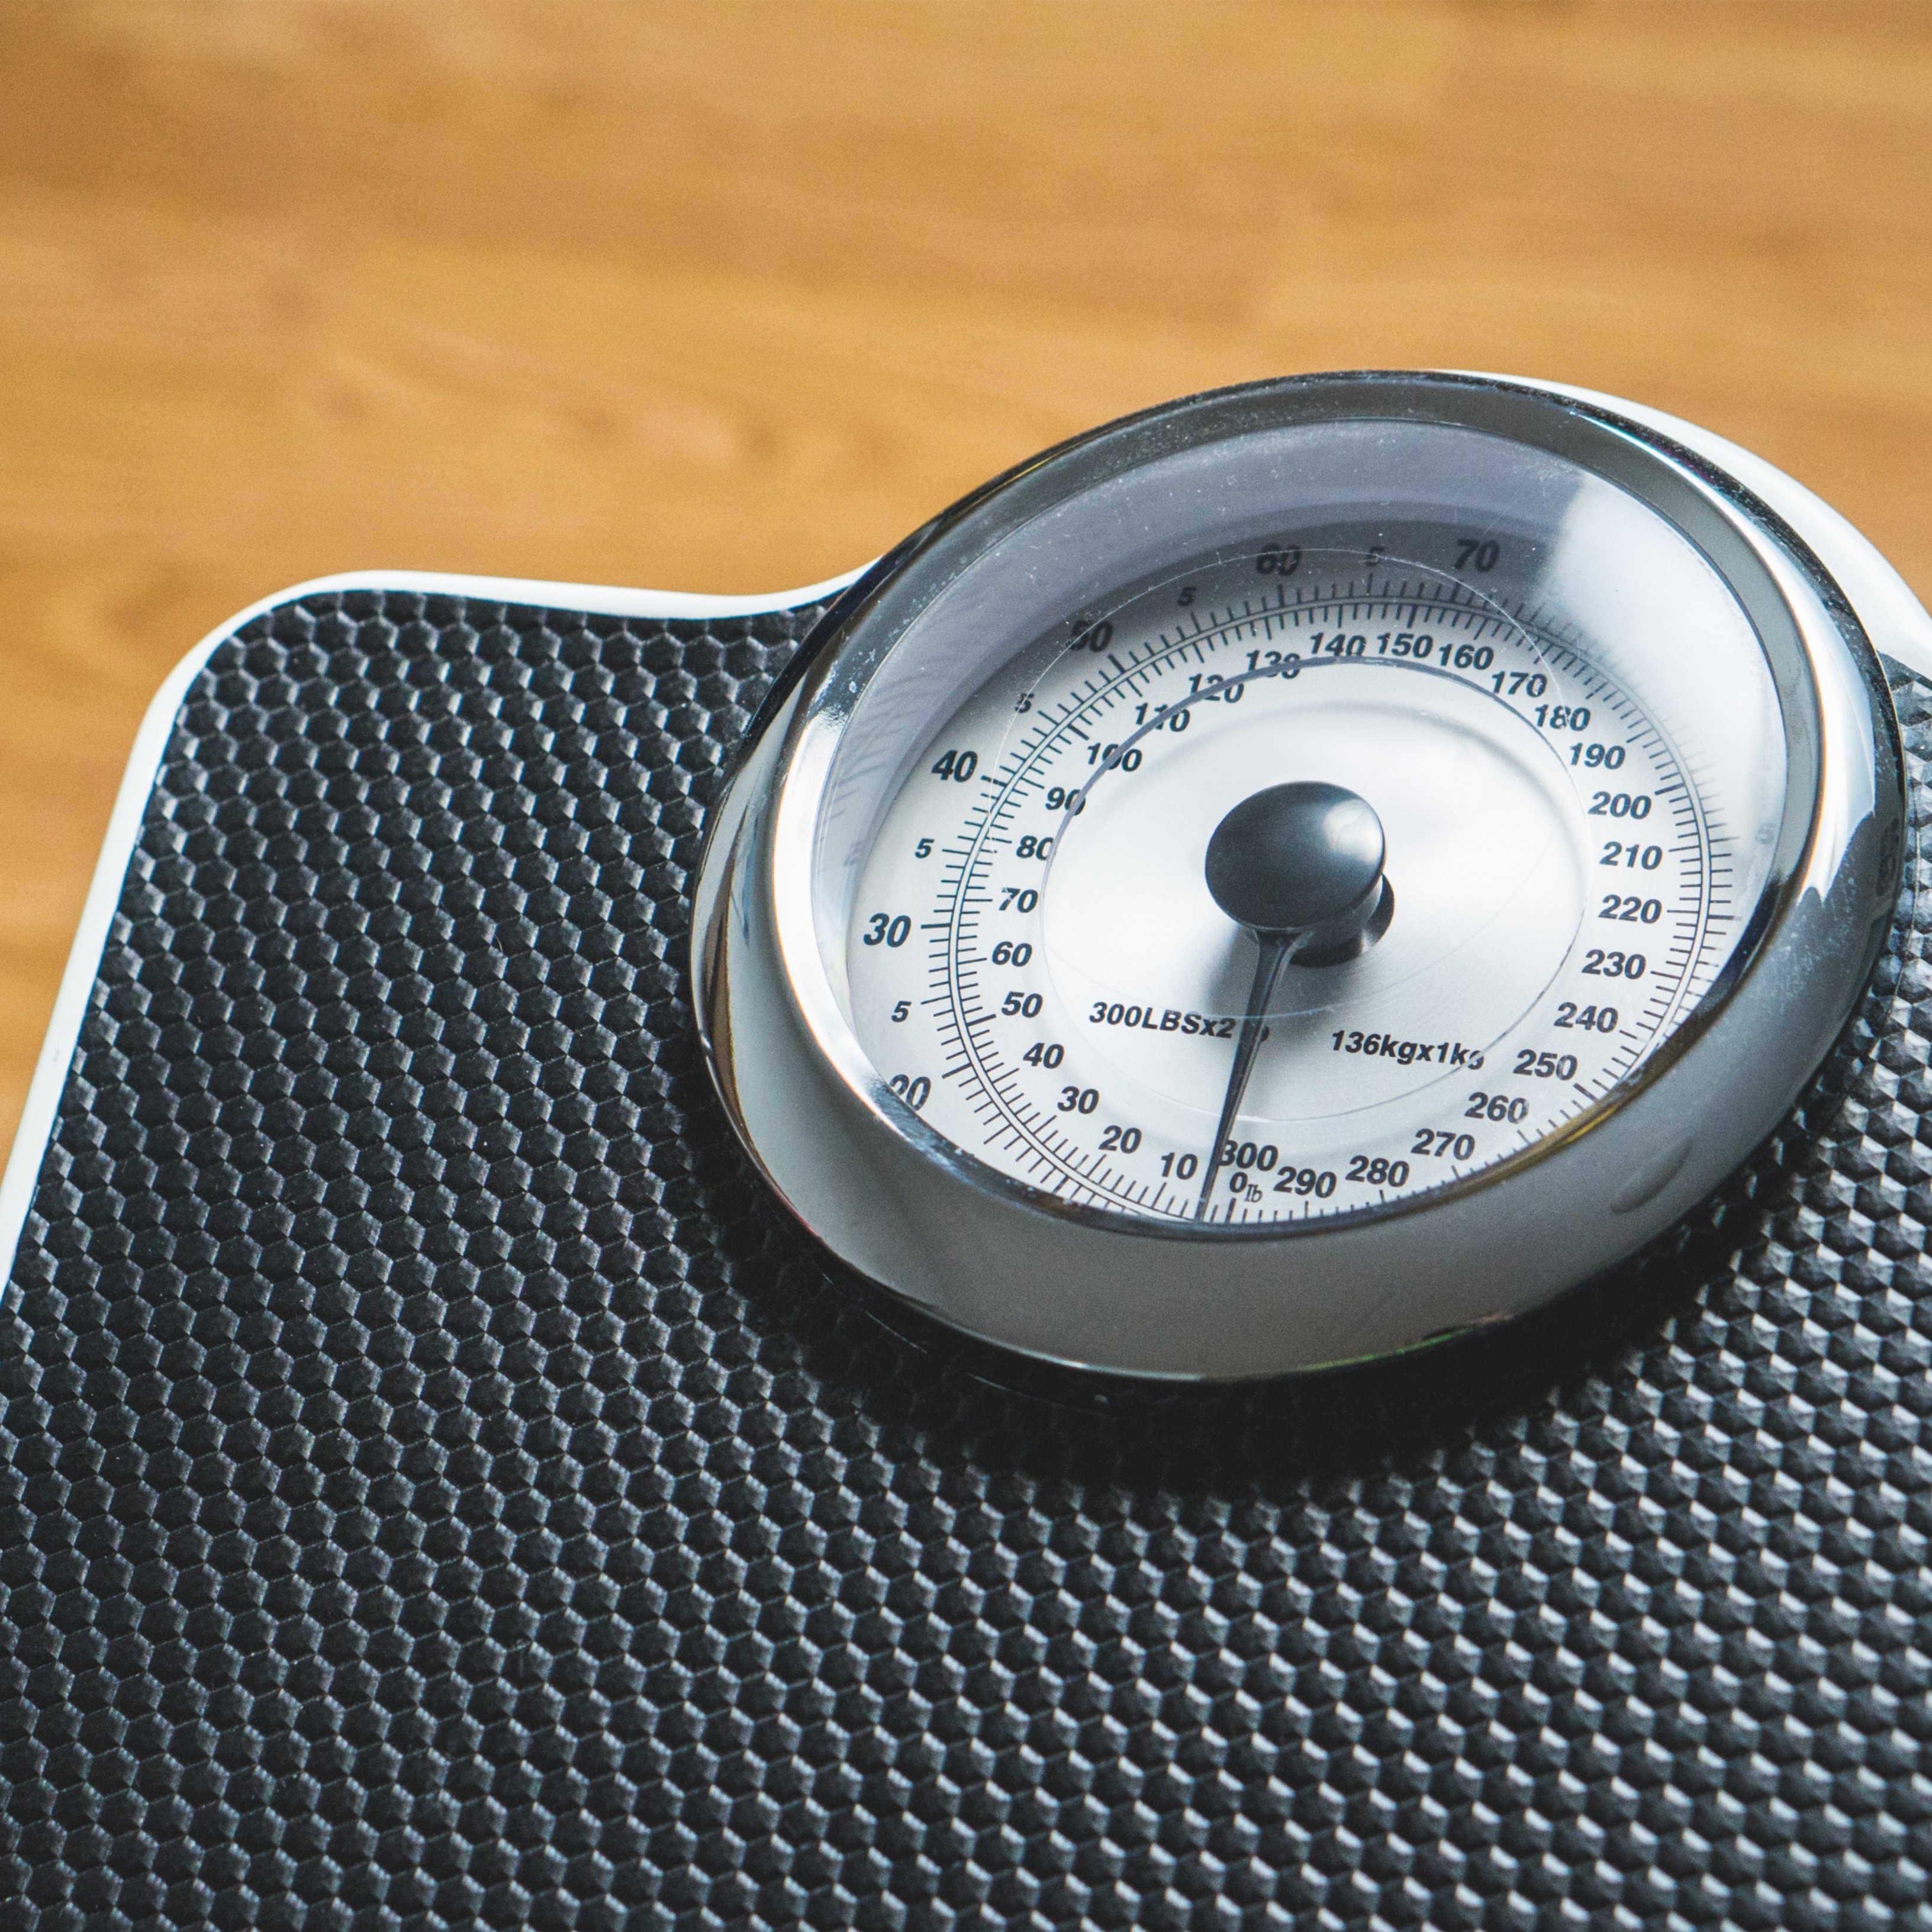 Cae un mito sobre la pérdida de peso, la dieta y el ejercicio